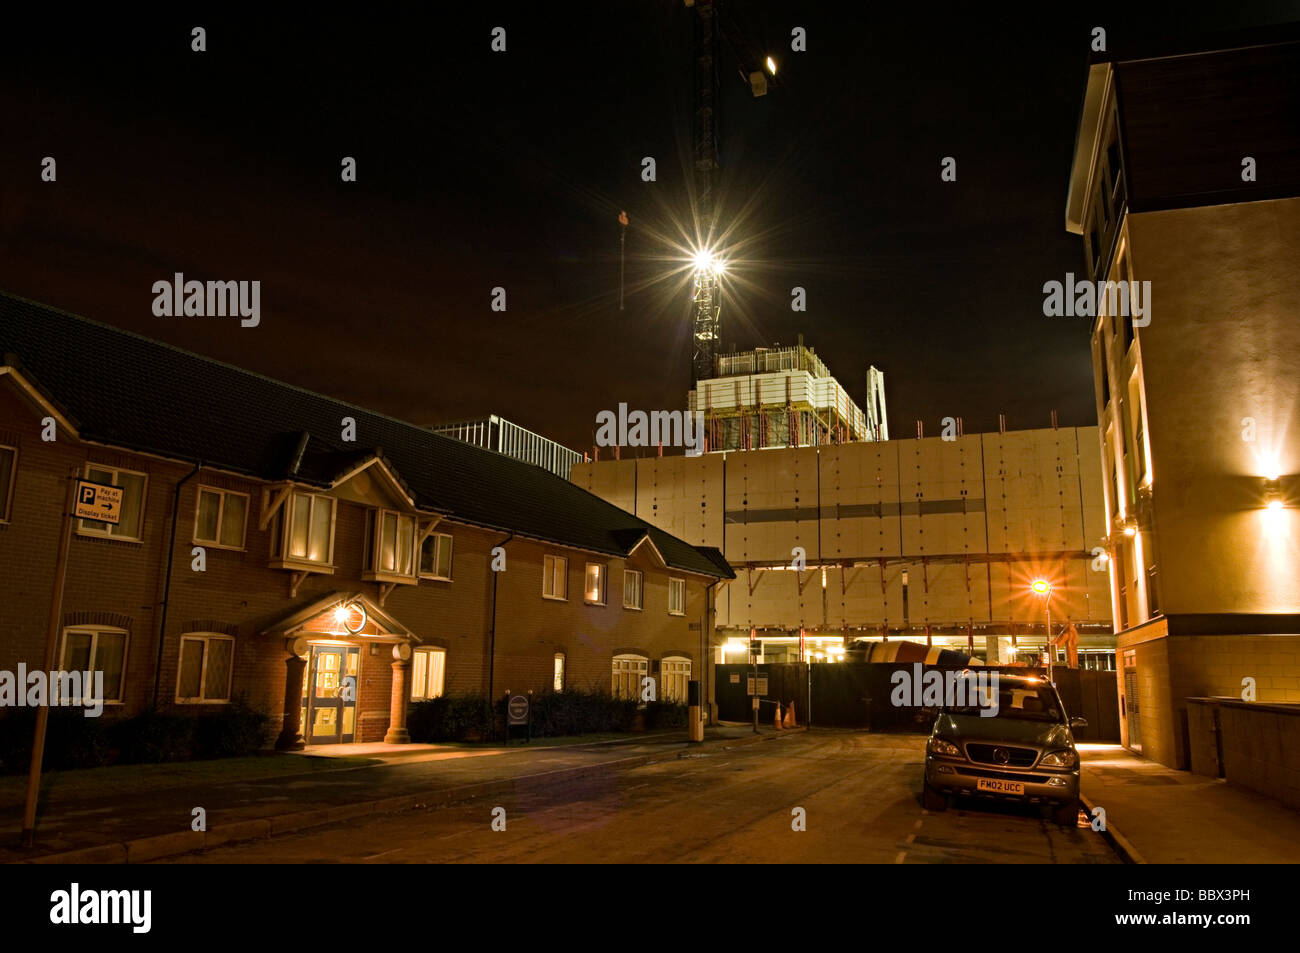 Bilder von der Konstruktion des Würfels in birmingham Stockfoto